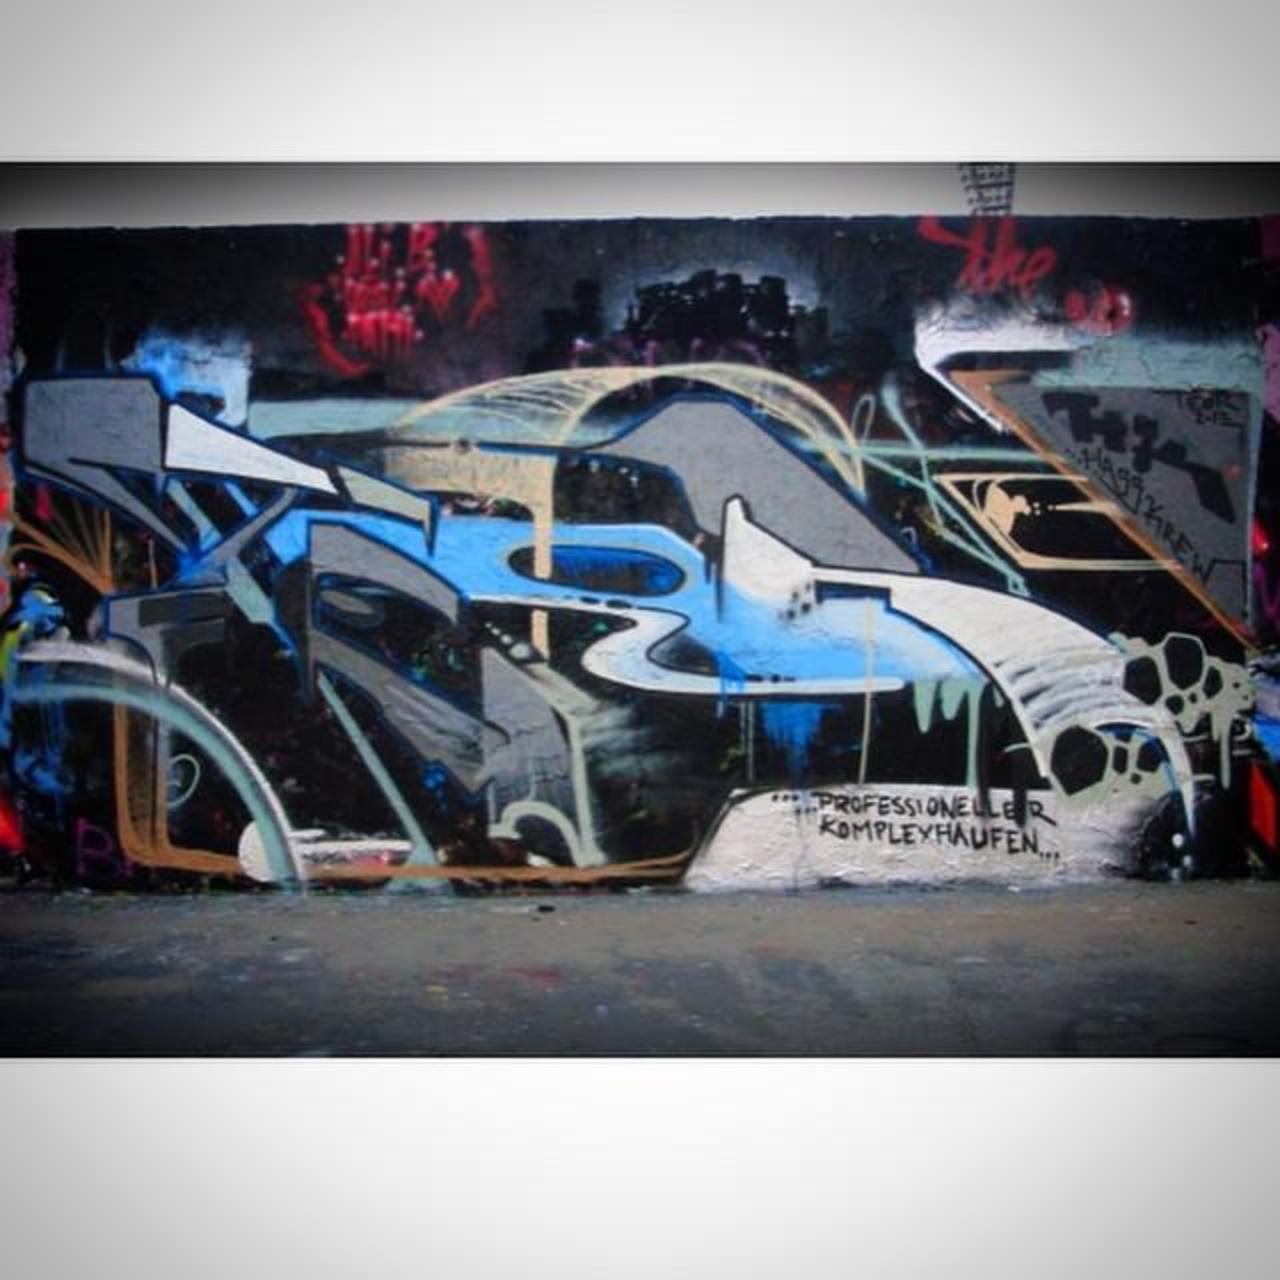 QUICK WALL - 2013
#graffiti #graffiti #berlin #graffitiberlin #berlingraffiti #berlinwriters #painter #mural #art #… http://t.co/vNiM09b38X